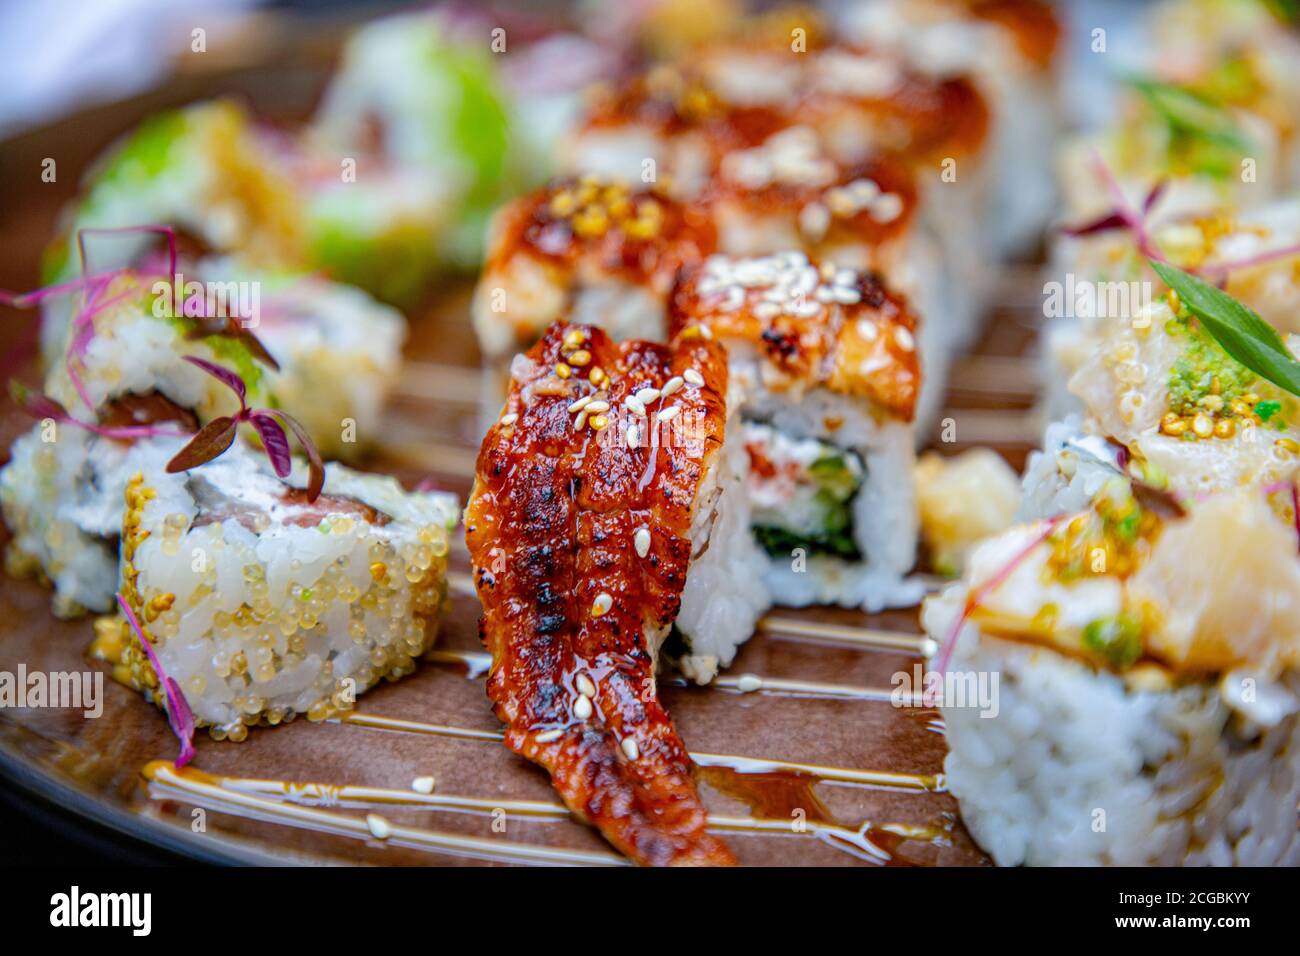 Différents petits pains japonais et sushis sur une assiette. Rouler avec de l'anguille. Banque D'Images